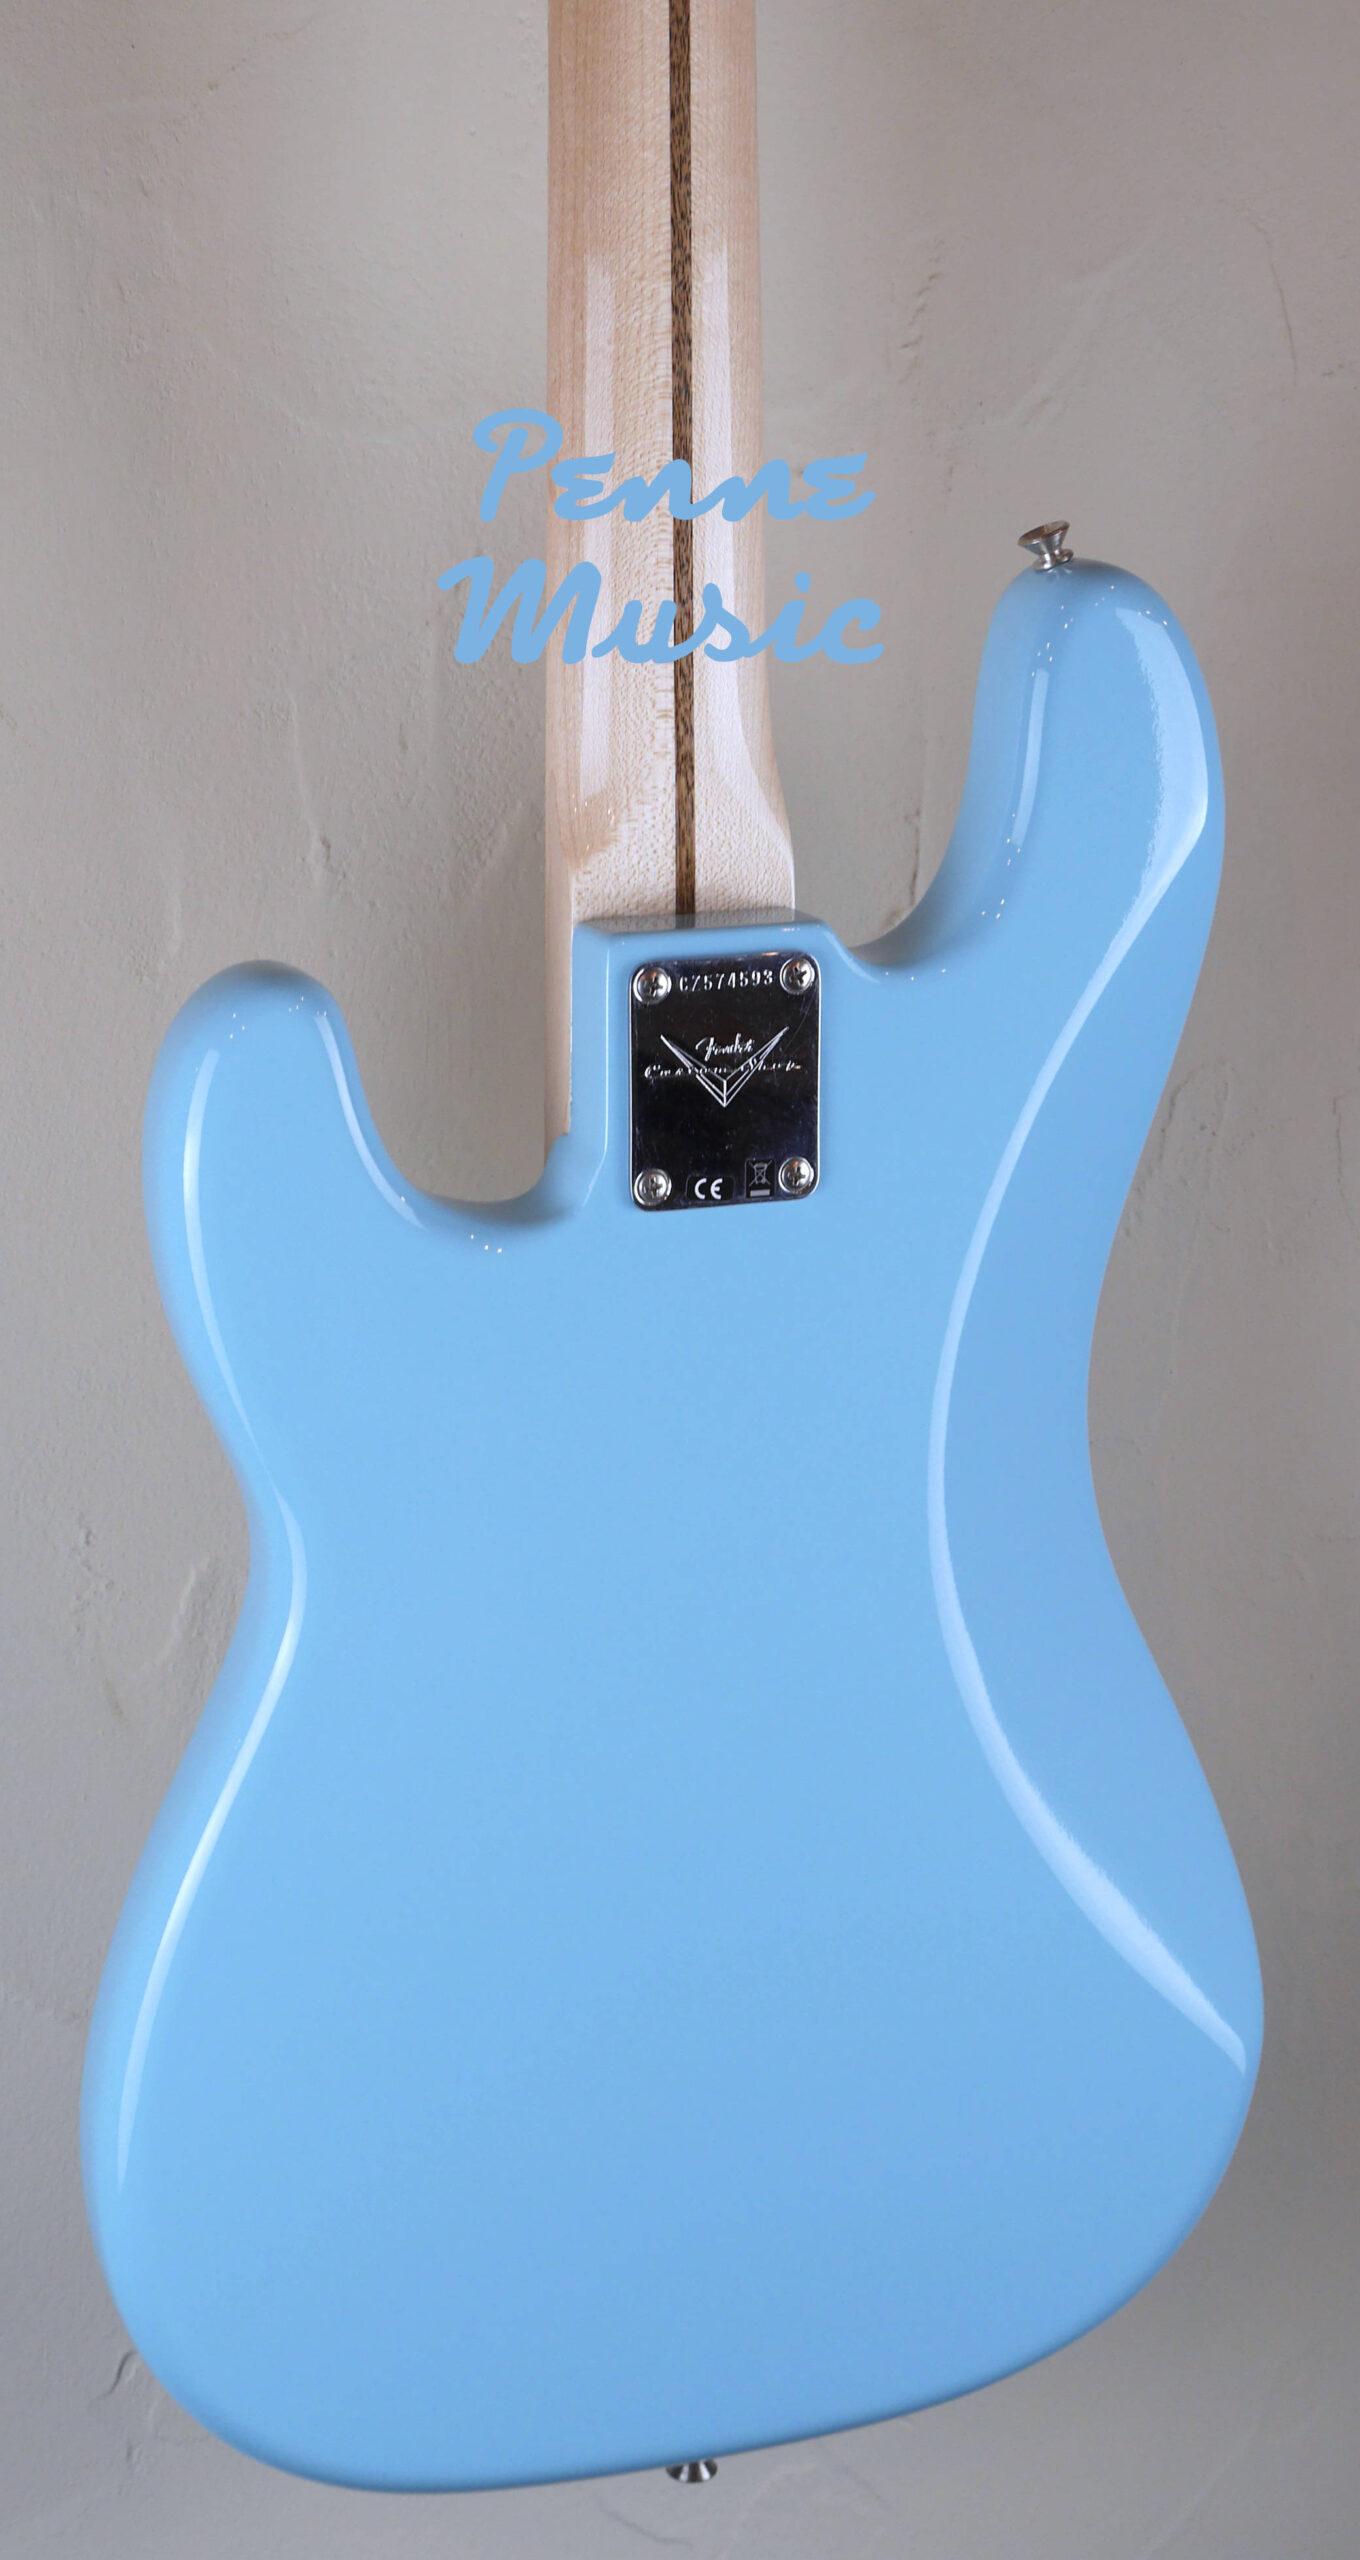 Fender Custom Shop Vintage Custom 1957 Precision Bass Daphne Blue NOS TCP 5